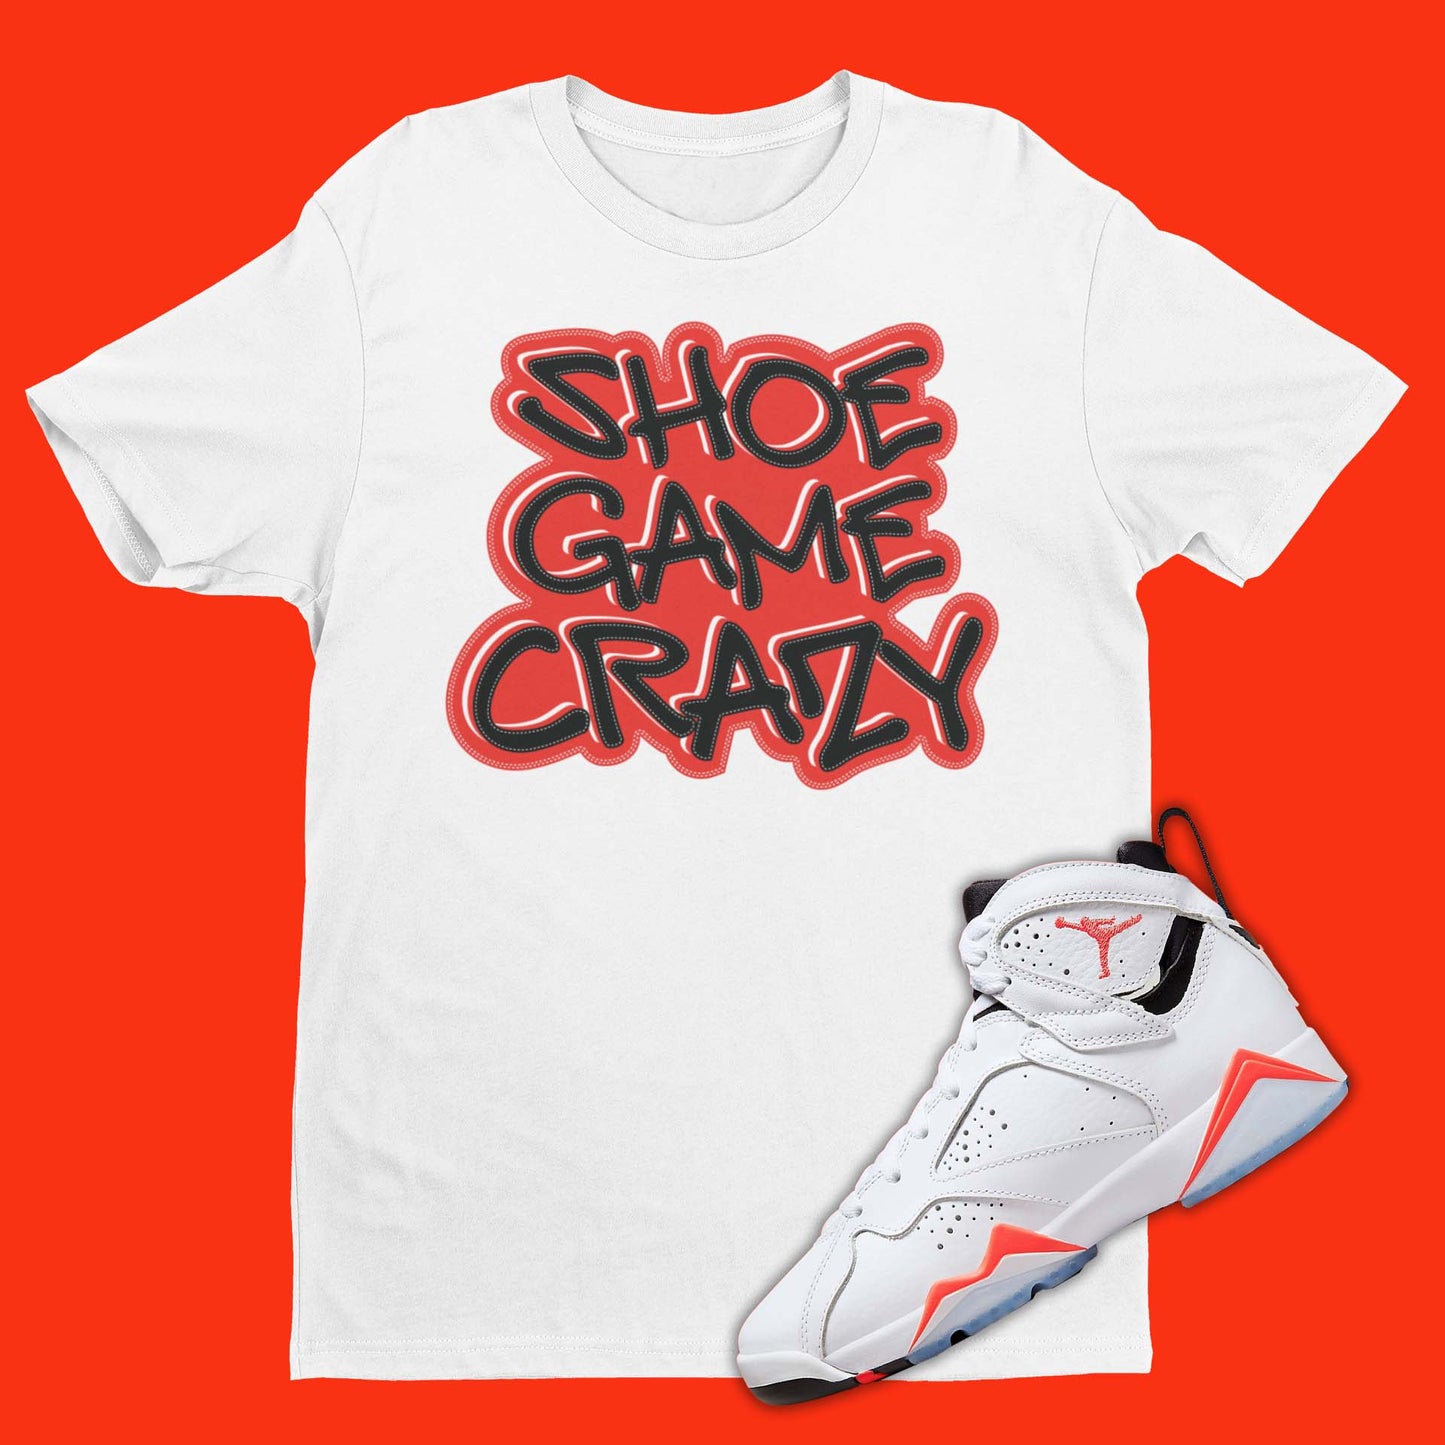 Shoe Game Crazy Shirt Matching Air Jordan 7 White Infrared